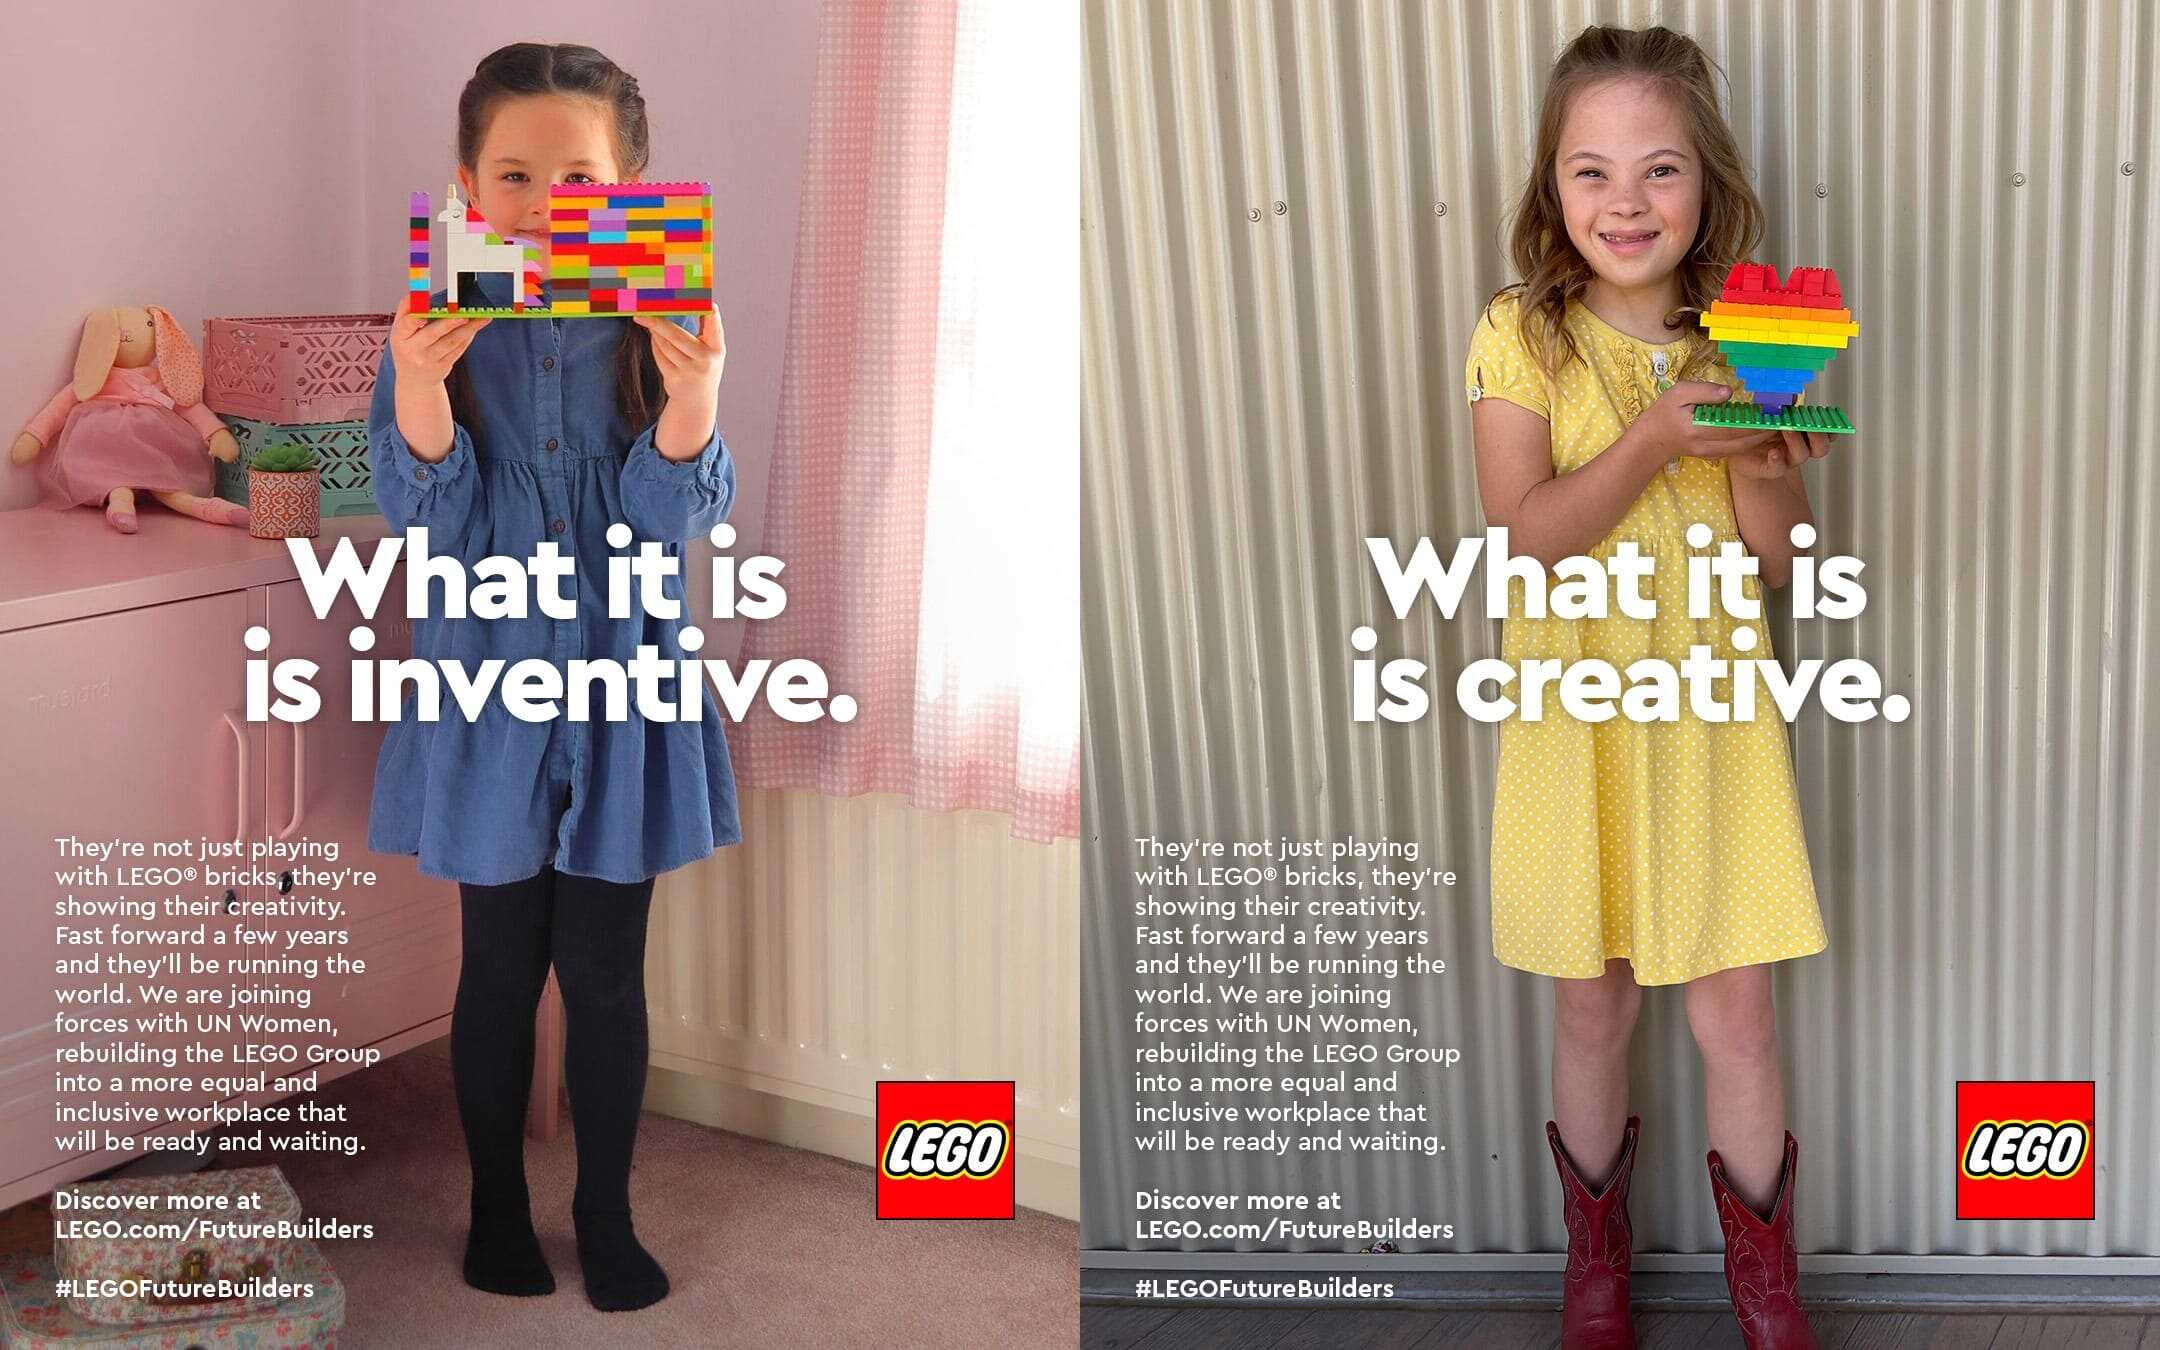 Lego-what-it-is-2021-giornata-internazionale-della-donna-ninja marketing